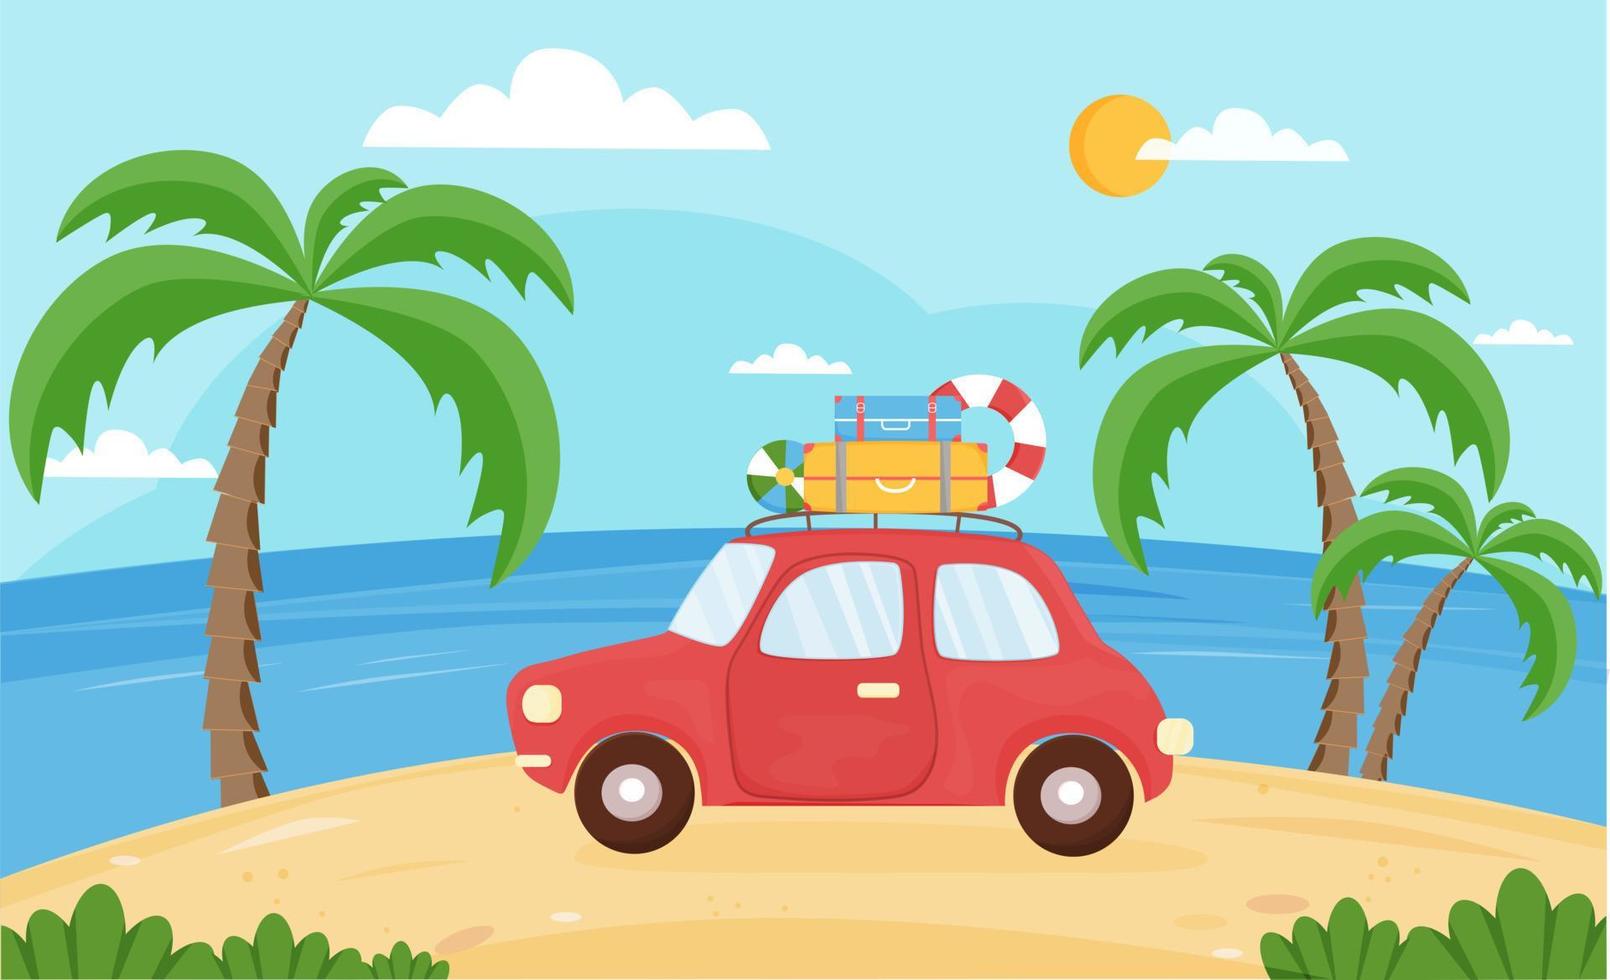 rouge voiture avec les valises est conduite sur le plage. été Contexte avec auto, mer, plage, palmiers. vacances, tourisme, été voyage, vacances. vecteur illustration dans plat style.